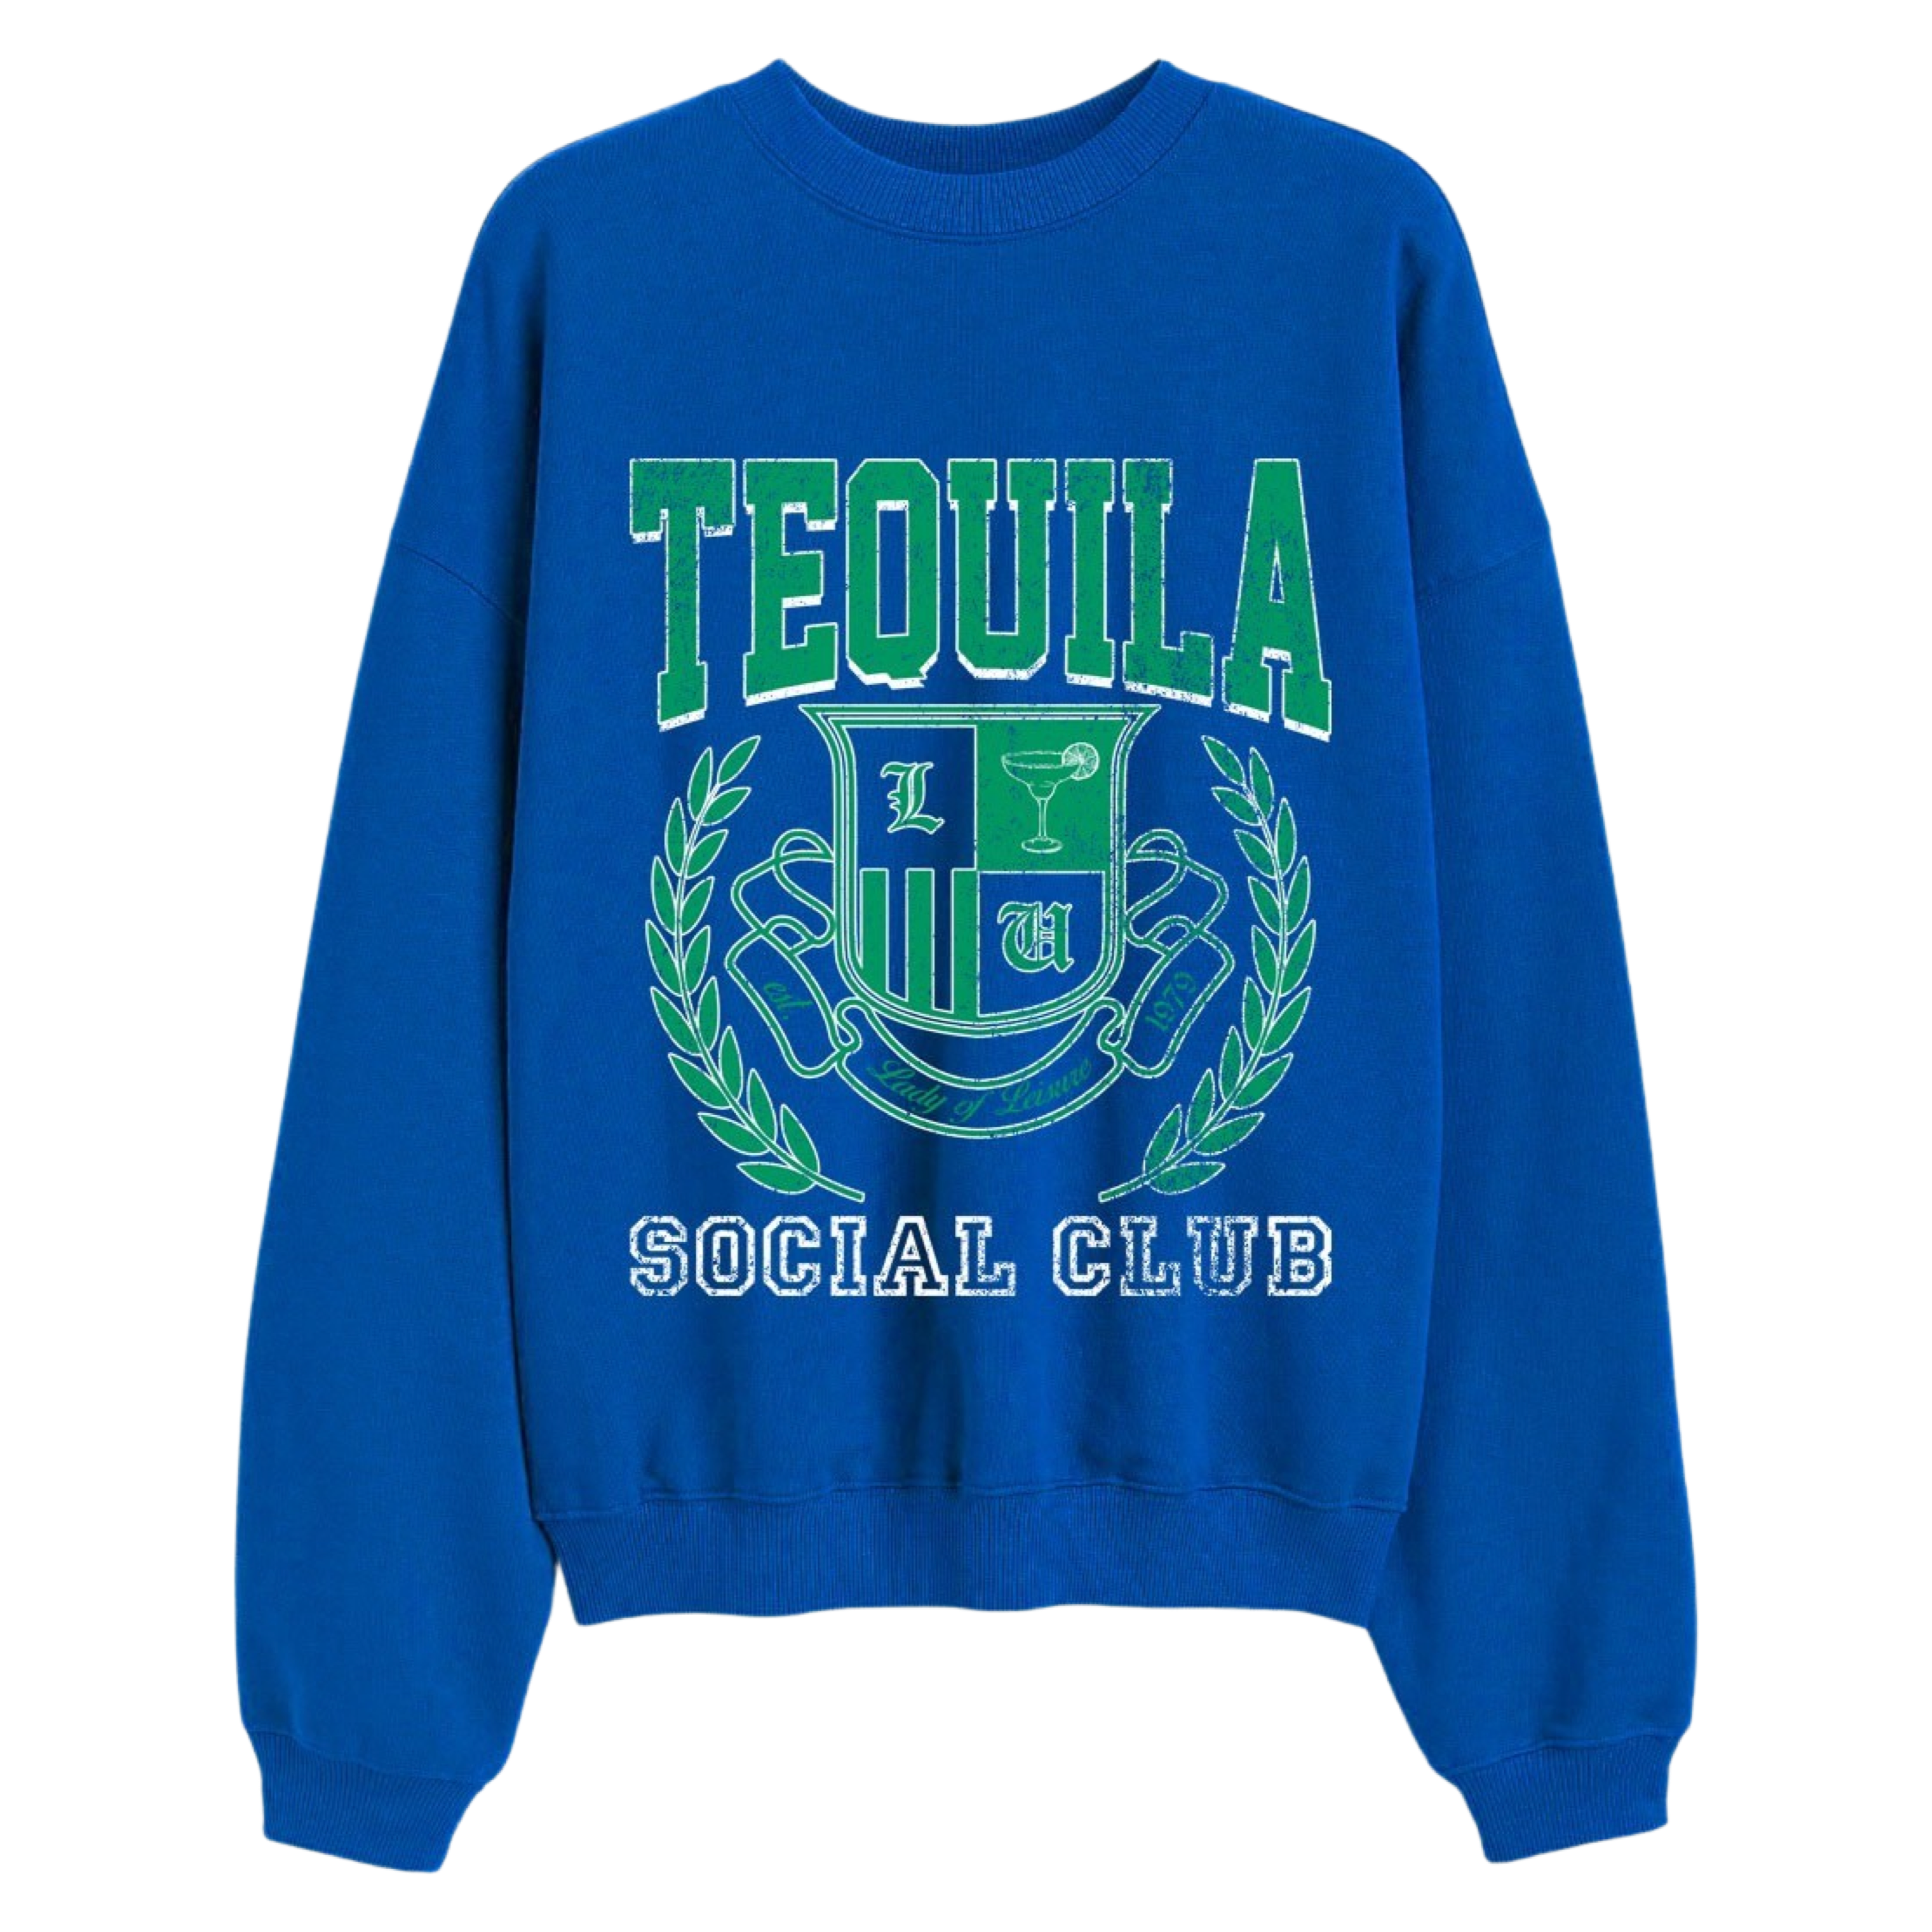 Tequila Social Club Sweatshirt